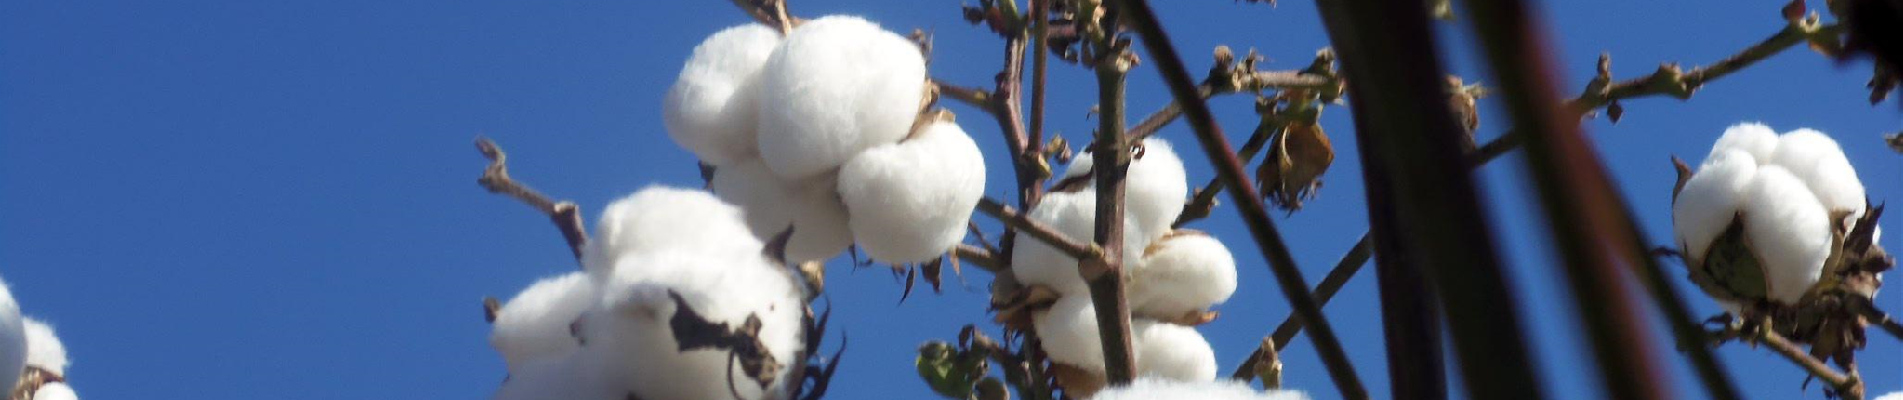 Compresas sanitarias biodegradables de algodón orgánico Compresas menstruales